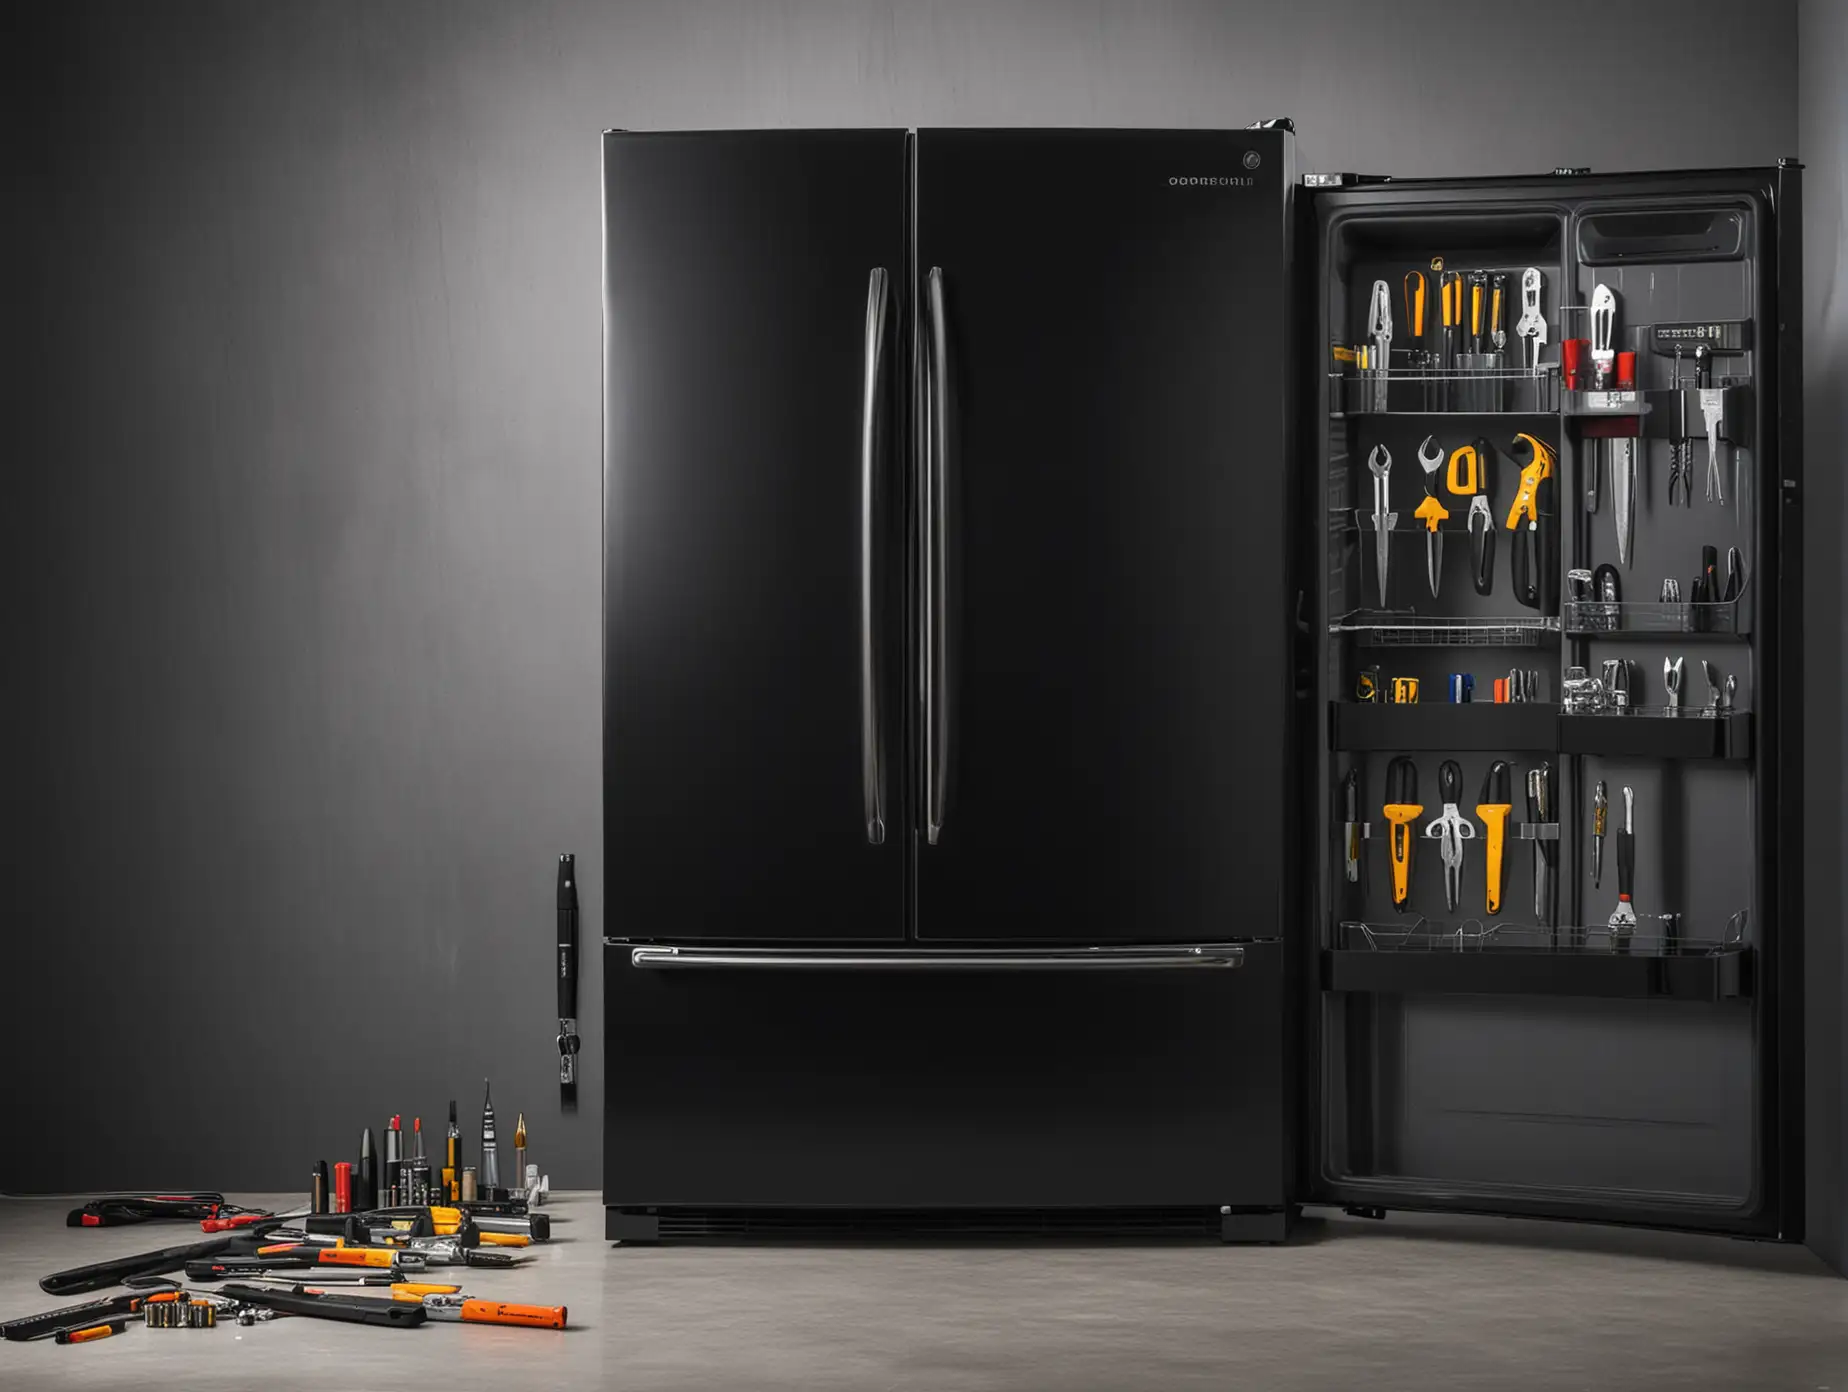 Фотография дорогого холодильника черного цвета, рядом с ней отвертки и гаечный ключ